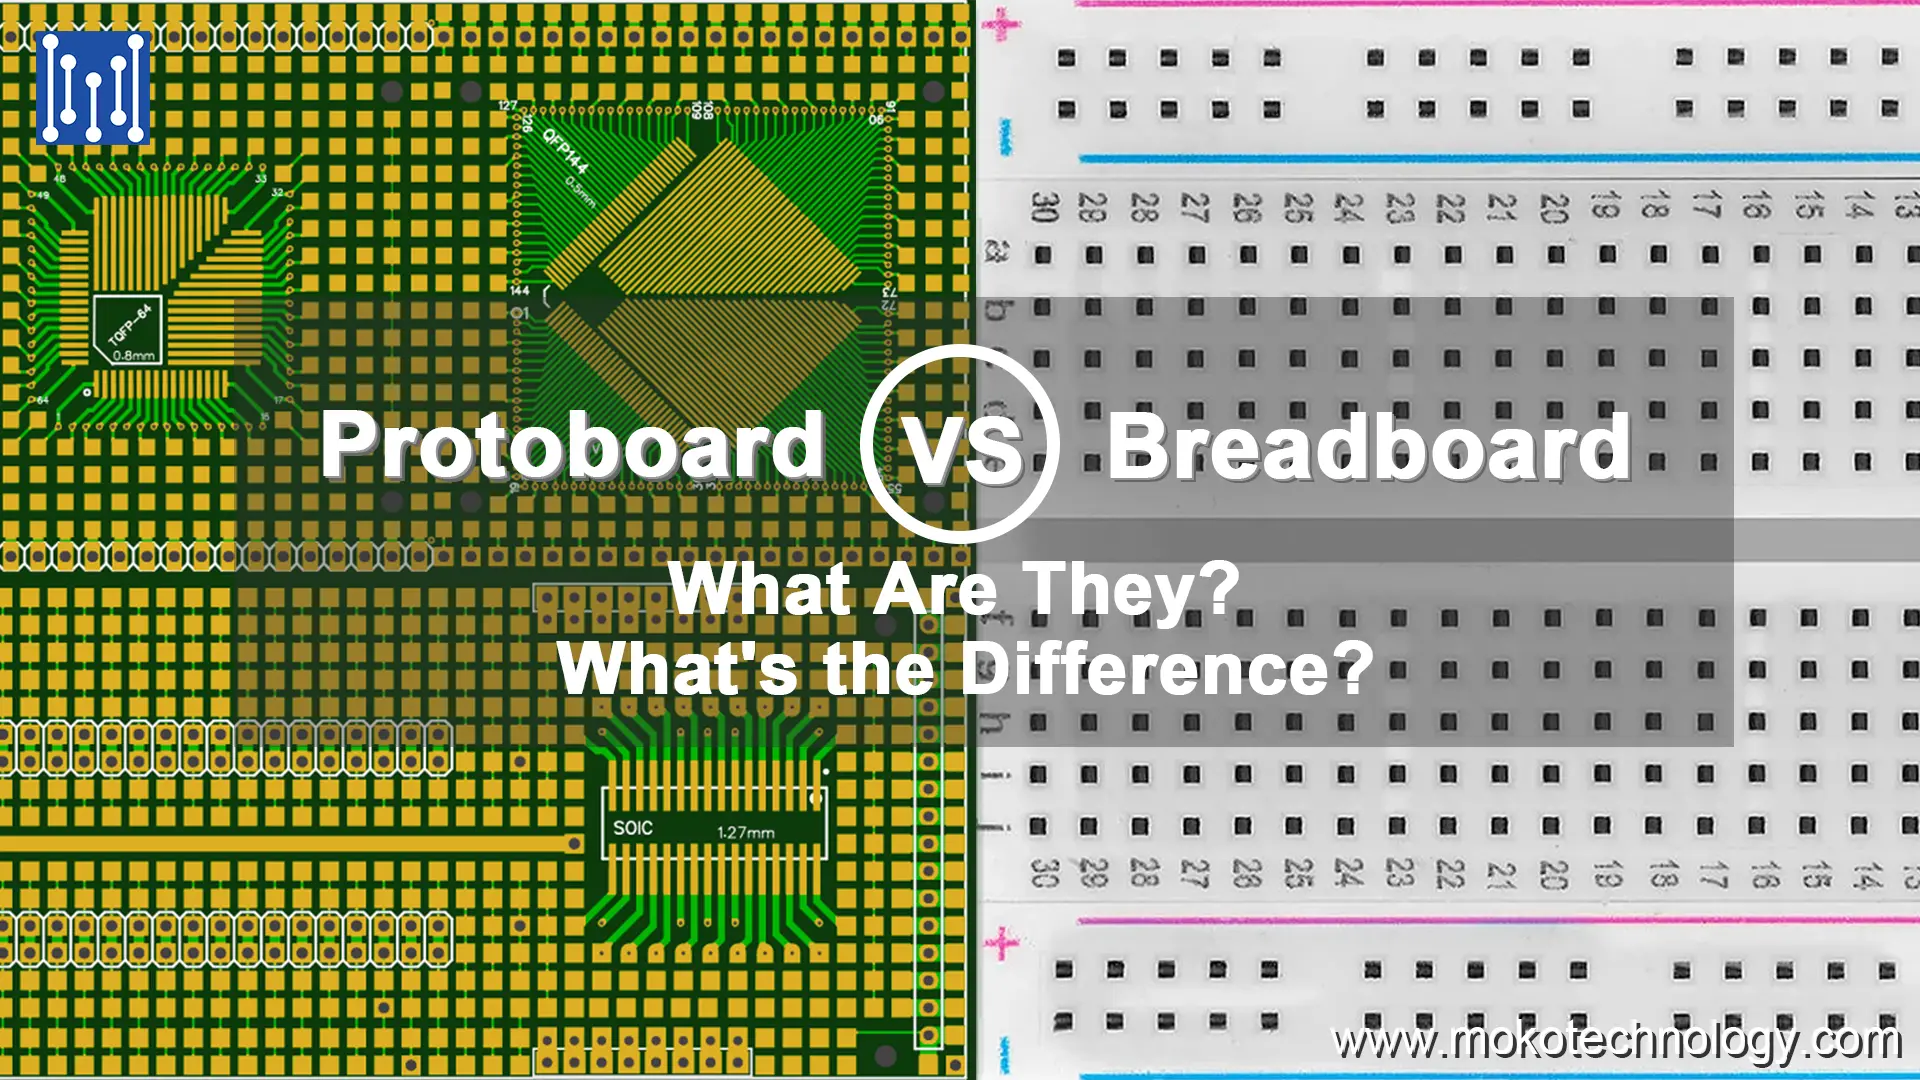 Protoboard vs Breadboard